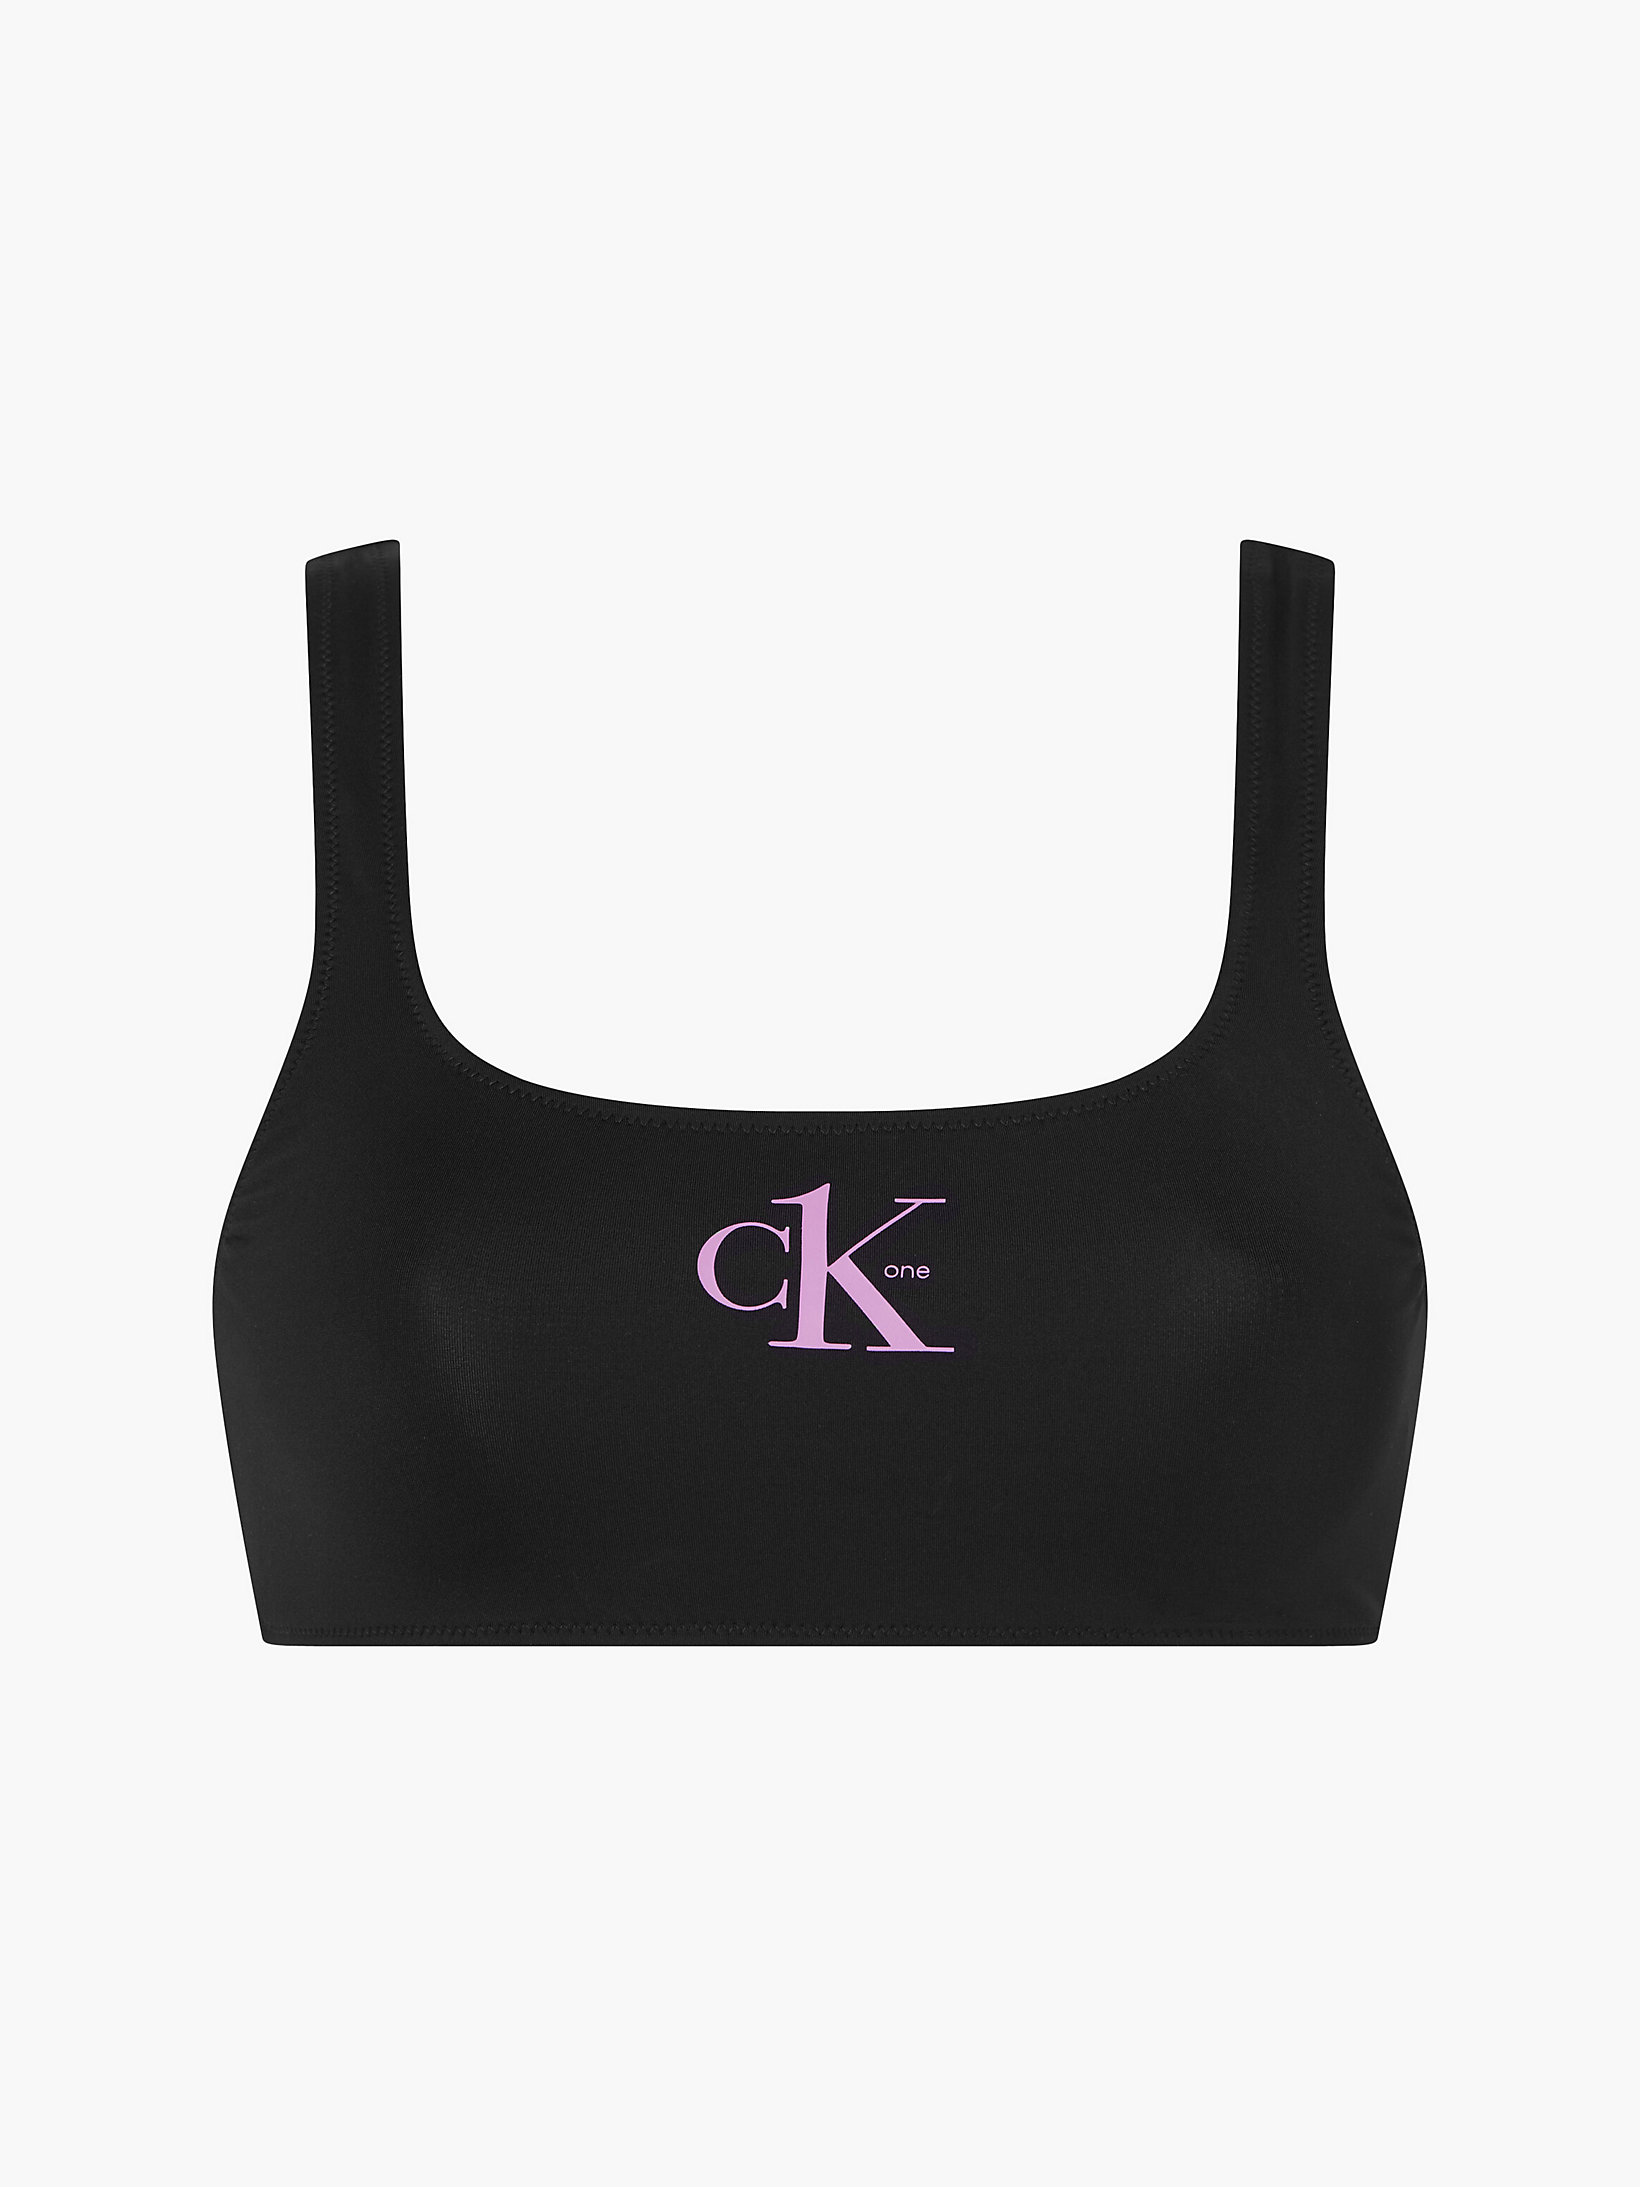 Pvh Black Top Bikini A Bralette - CK One undefined donna Calvin Klein